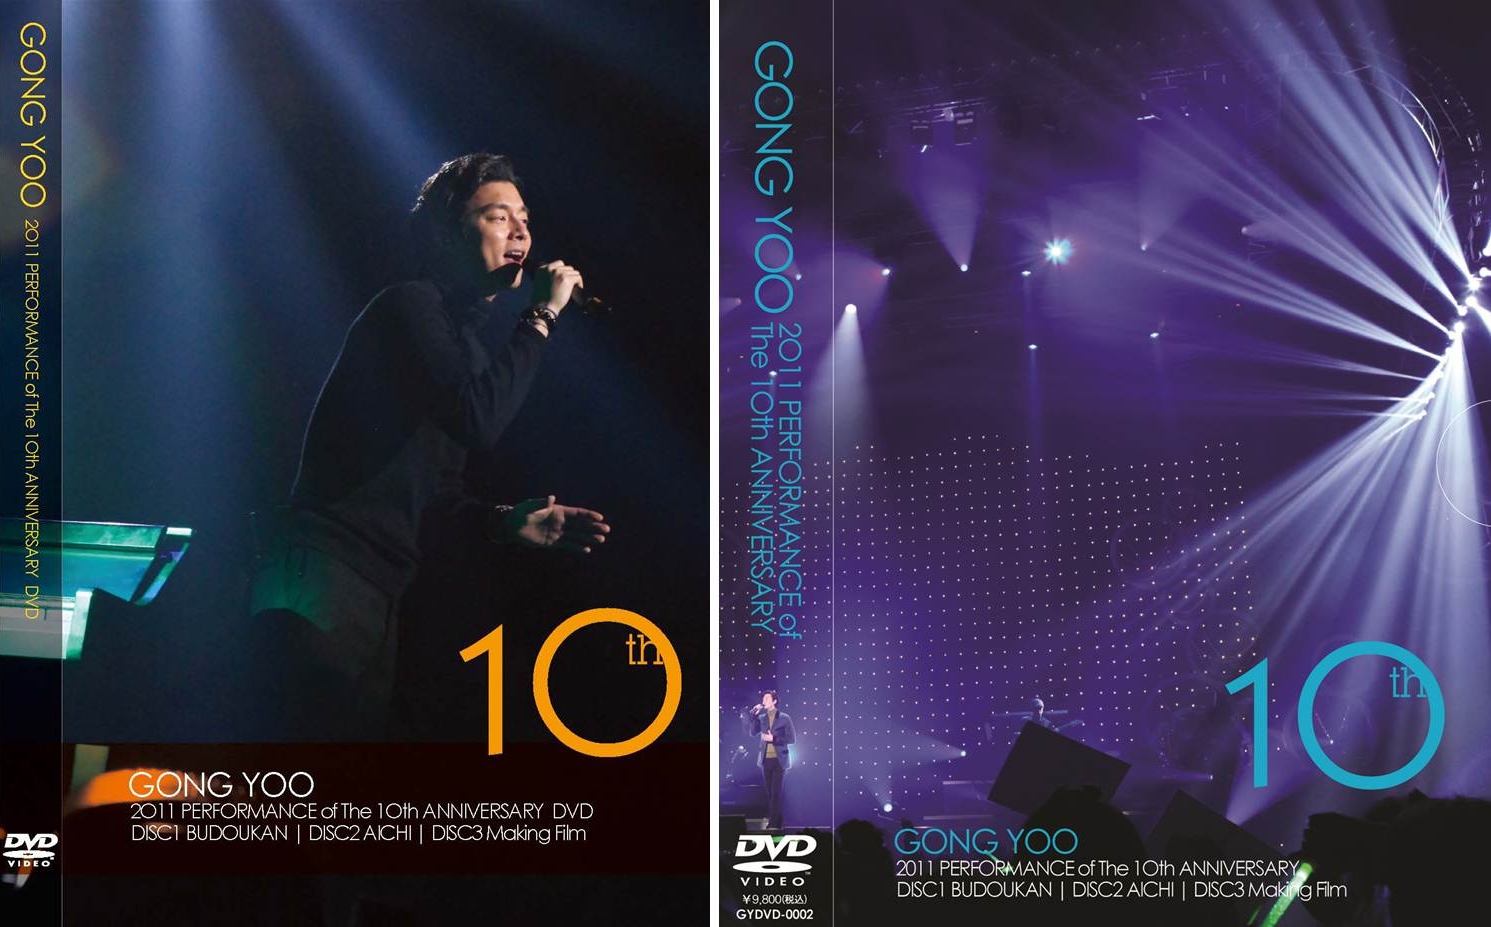 韓国人俳優コン ユ デビュー10周年記念公演 Dvd Box発売決定 Mnetのプレスリリース